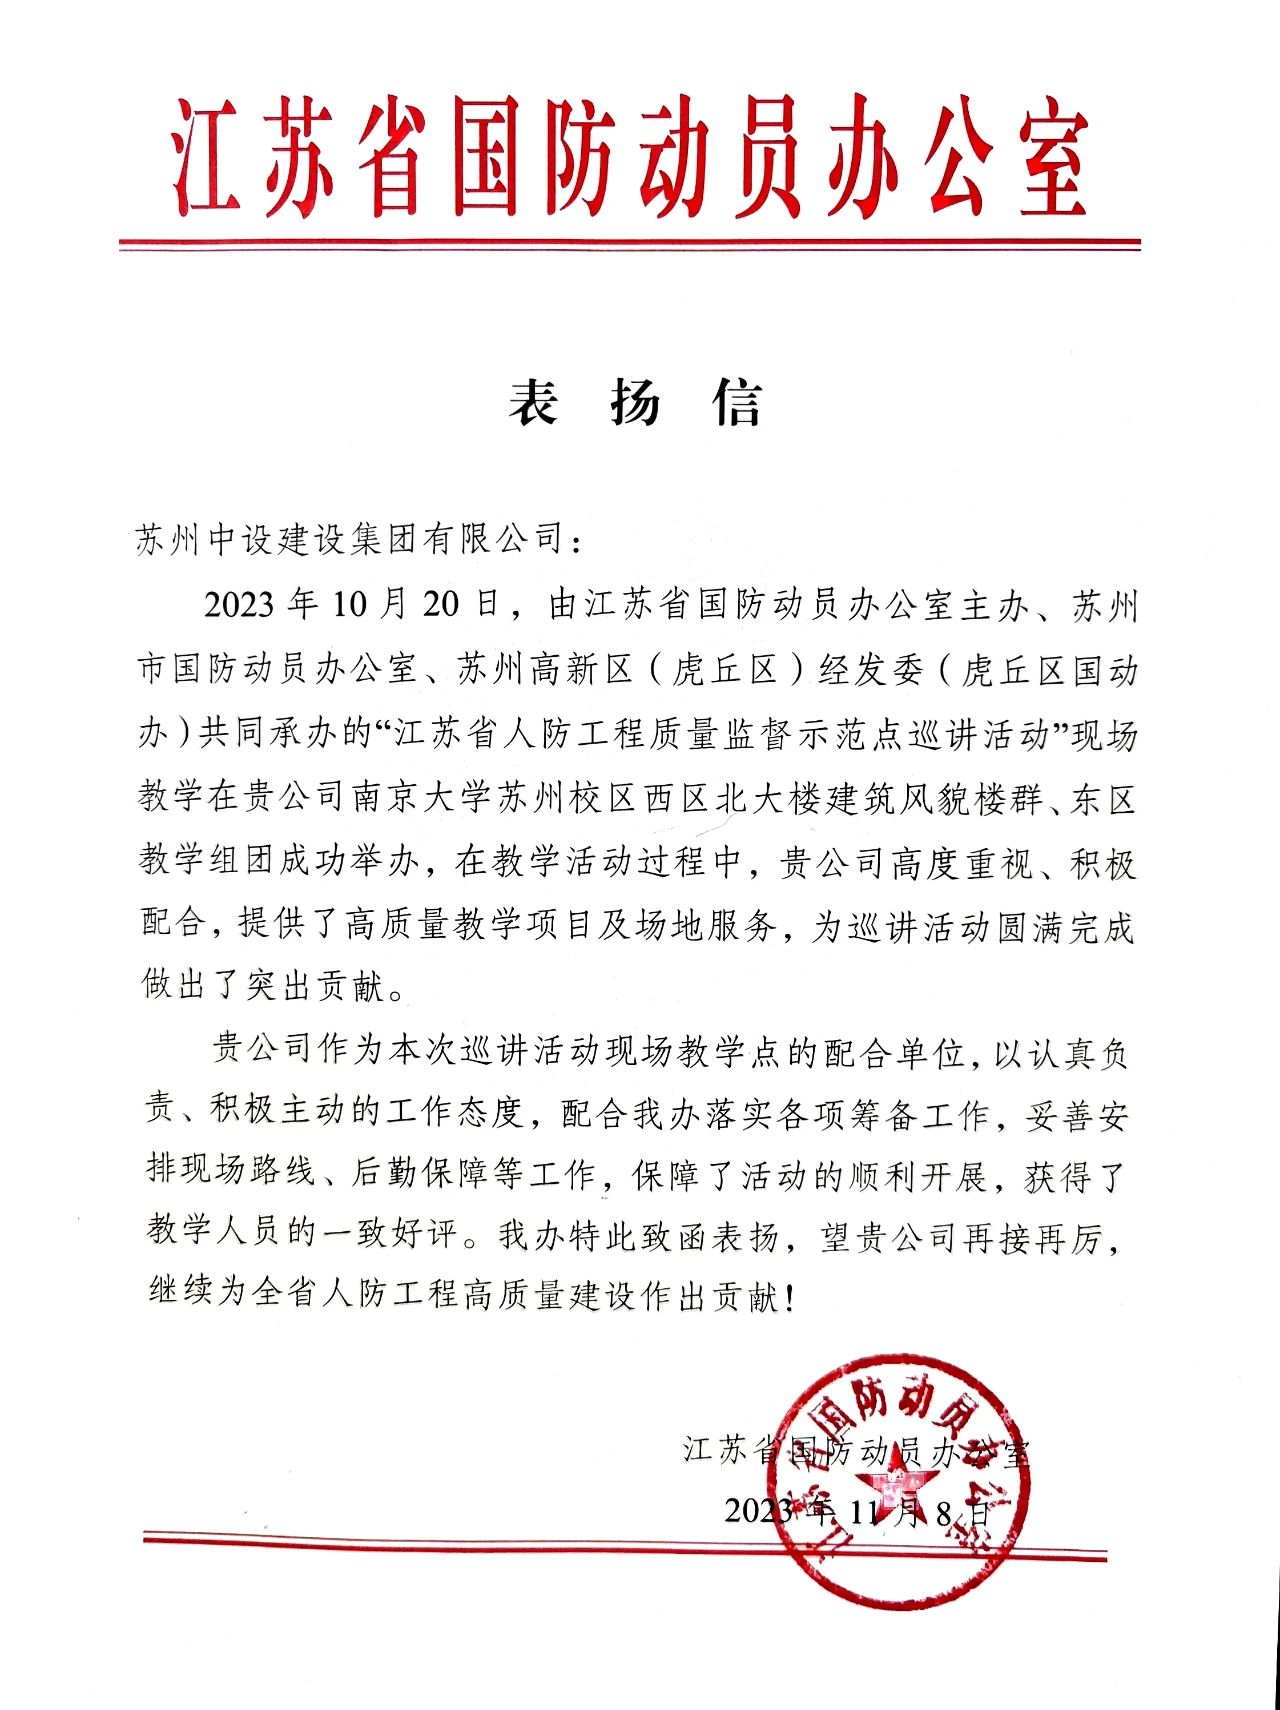 【喜讯】江苏省国防动员办公室发来表扬信